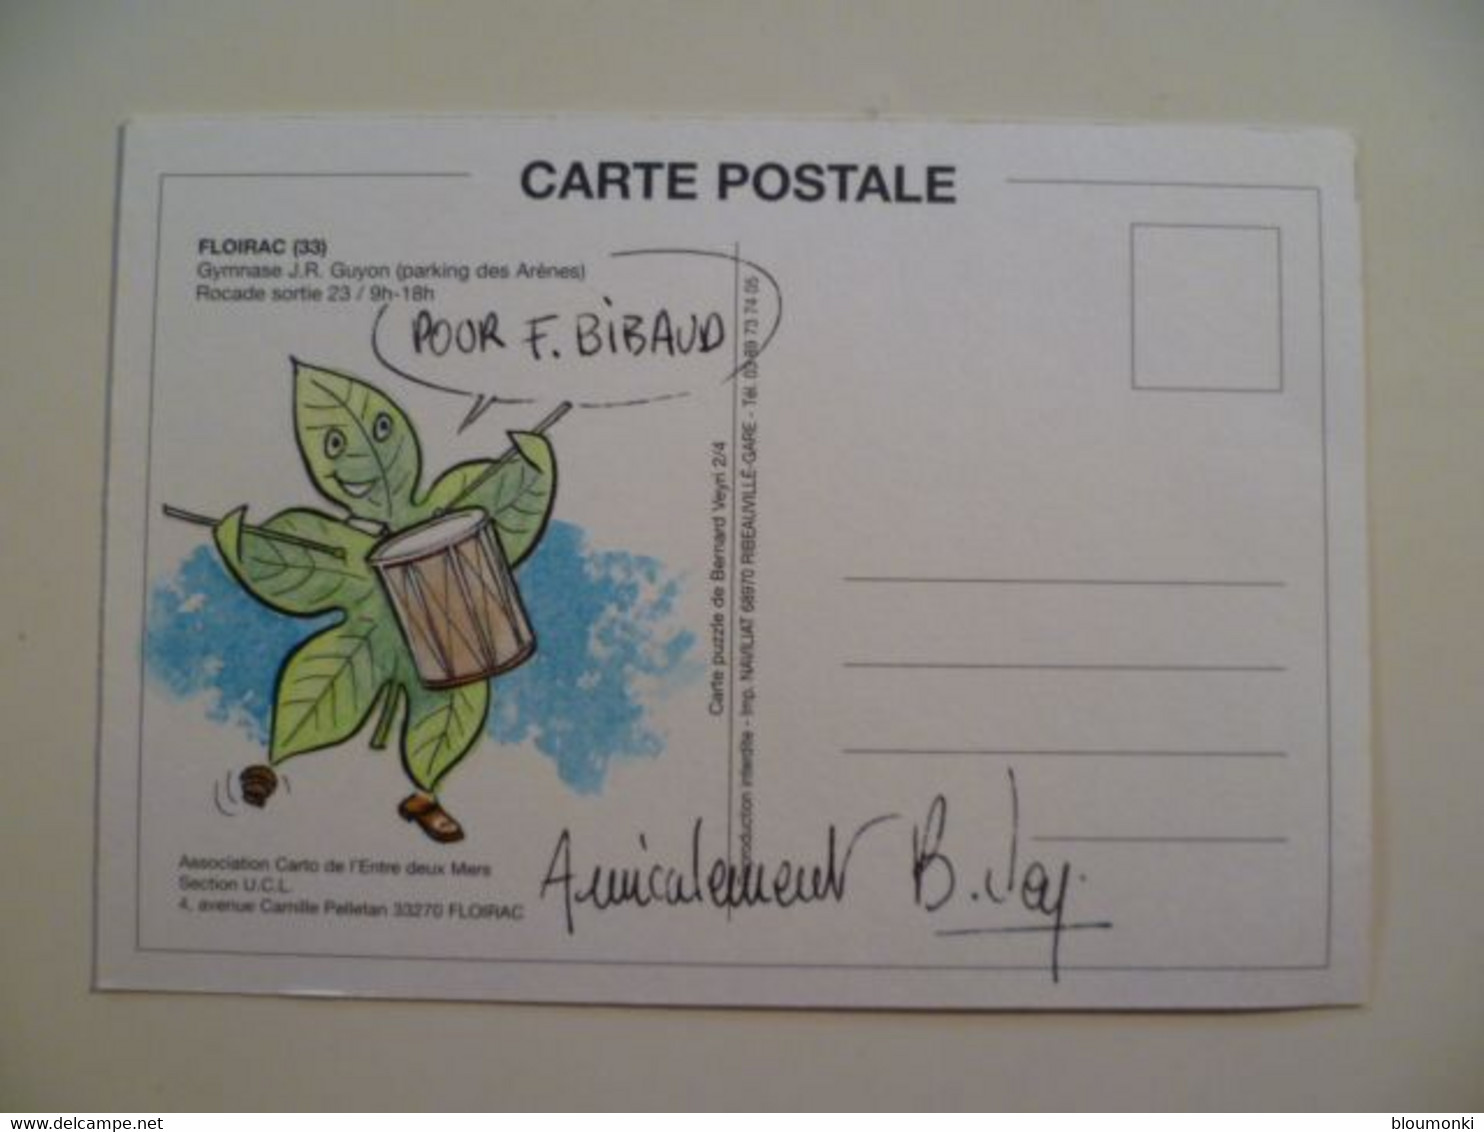 Carte Postale Illustrateur Bernard VEYRI / Dessin Unique Dédicace F Bibaud /  Floirac  2002 - Veyri, Bernard